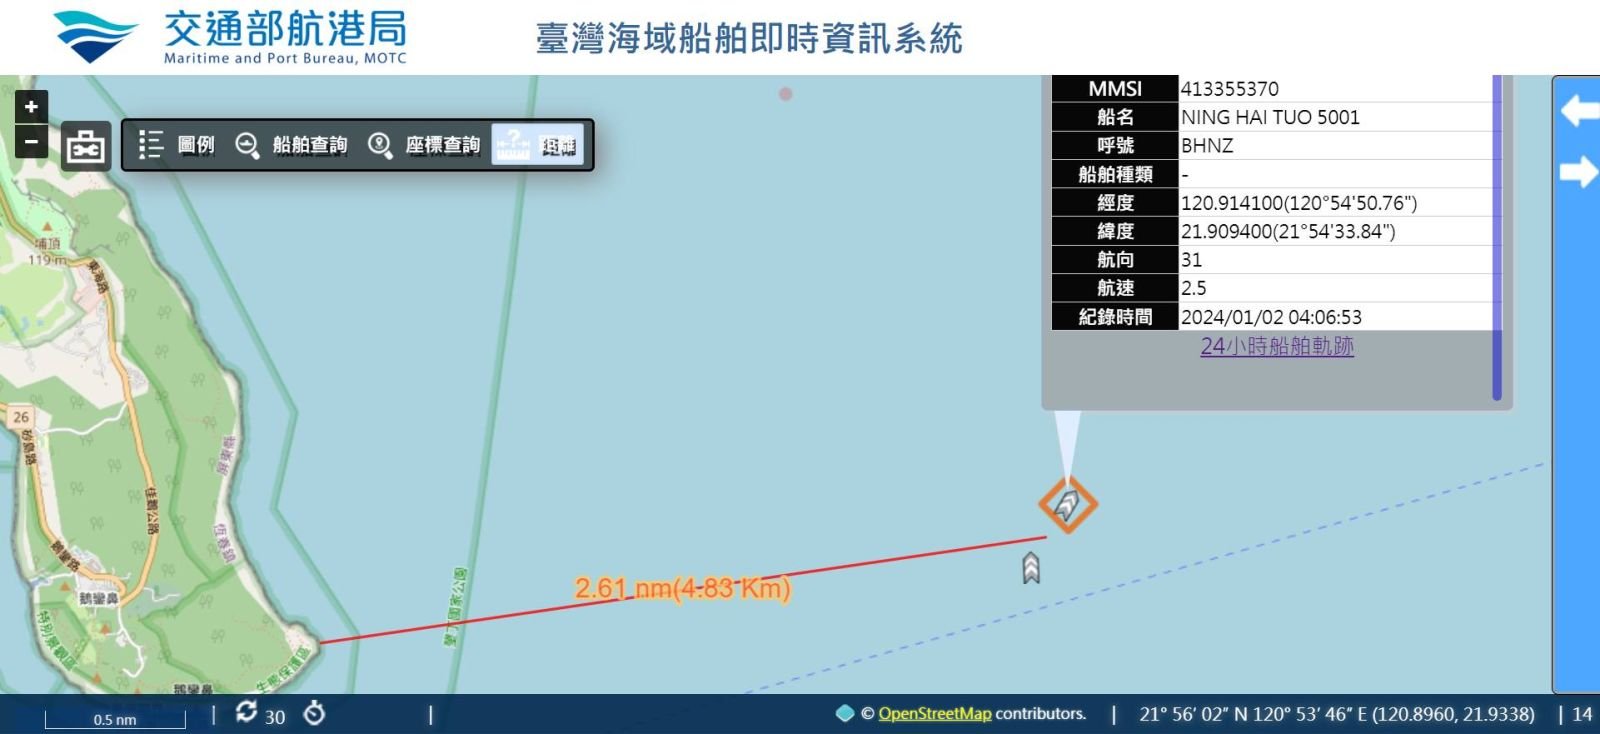   兩艘中國籍拖船於跨年期間闖台灣水域。翻攝軍事粉專「Taiwan ADIZ」